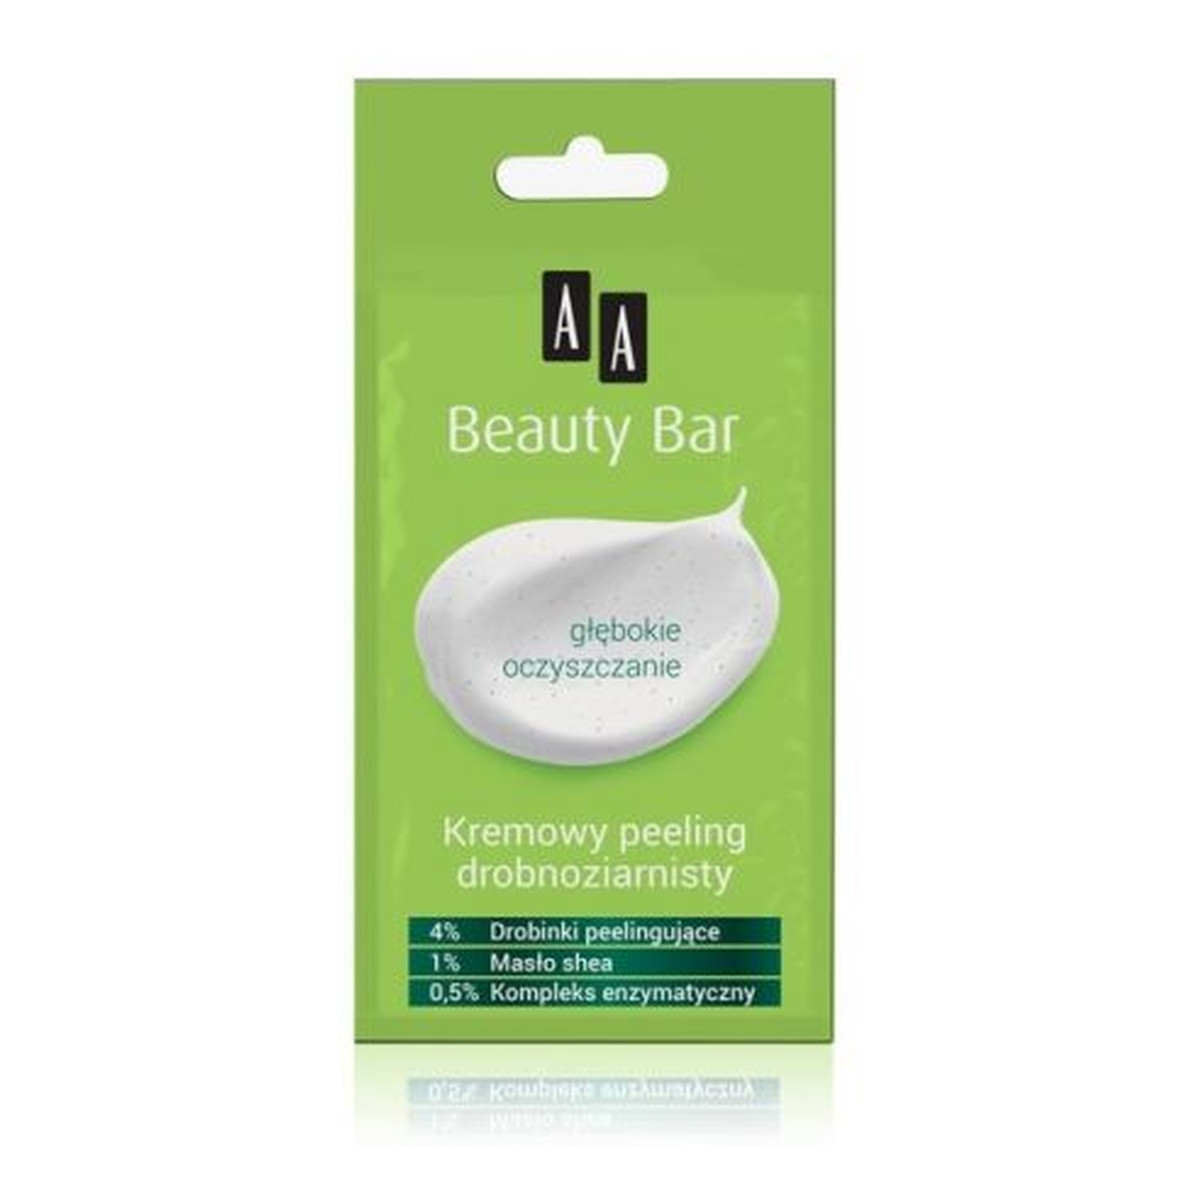 AA AA Beauty Bar Kremowy peeling drobnoziarnisty 8ml